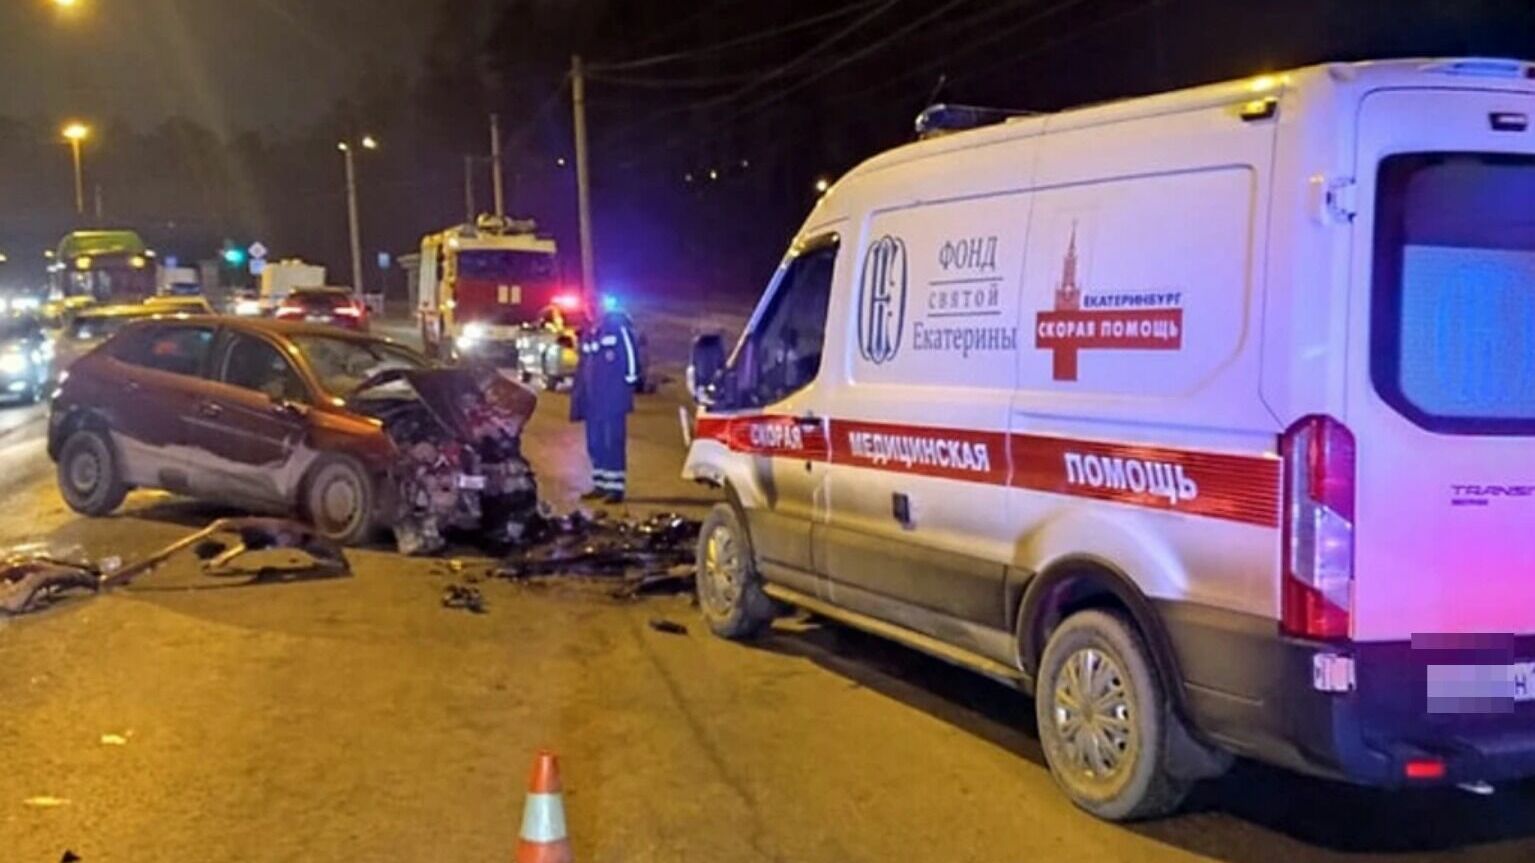 Протаранивший скорую помощь в Екатеринбурге водитель иномарки попал в реанимацию